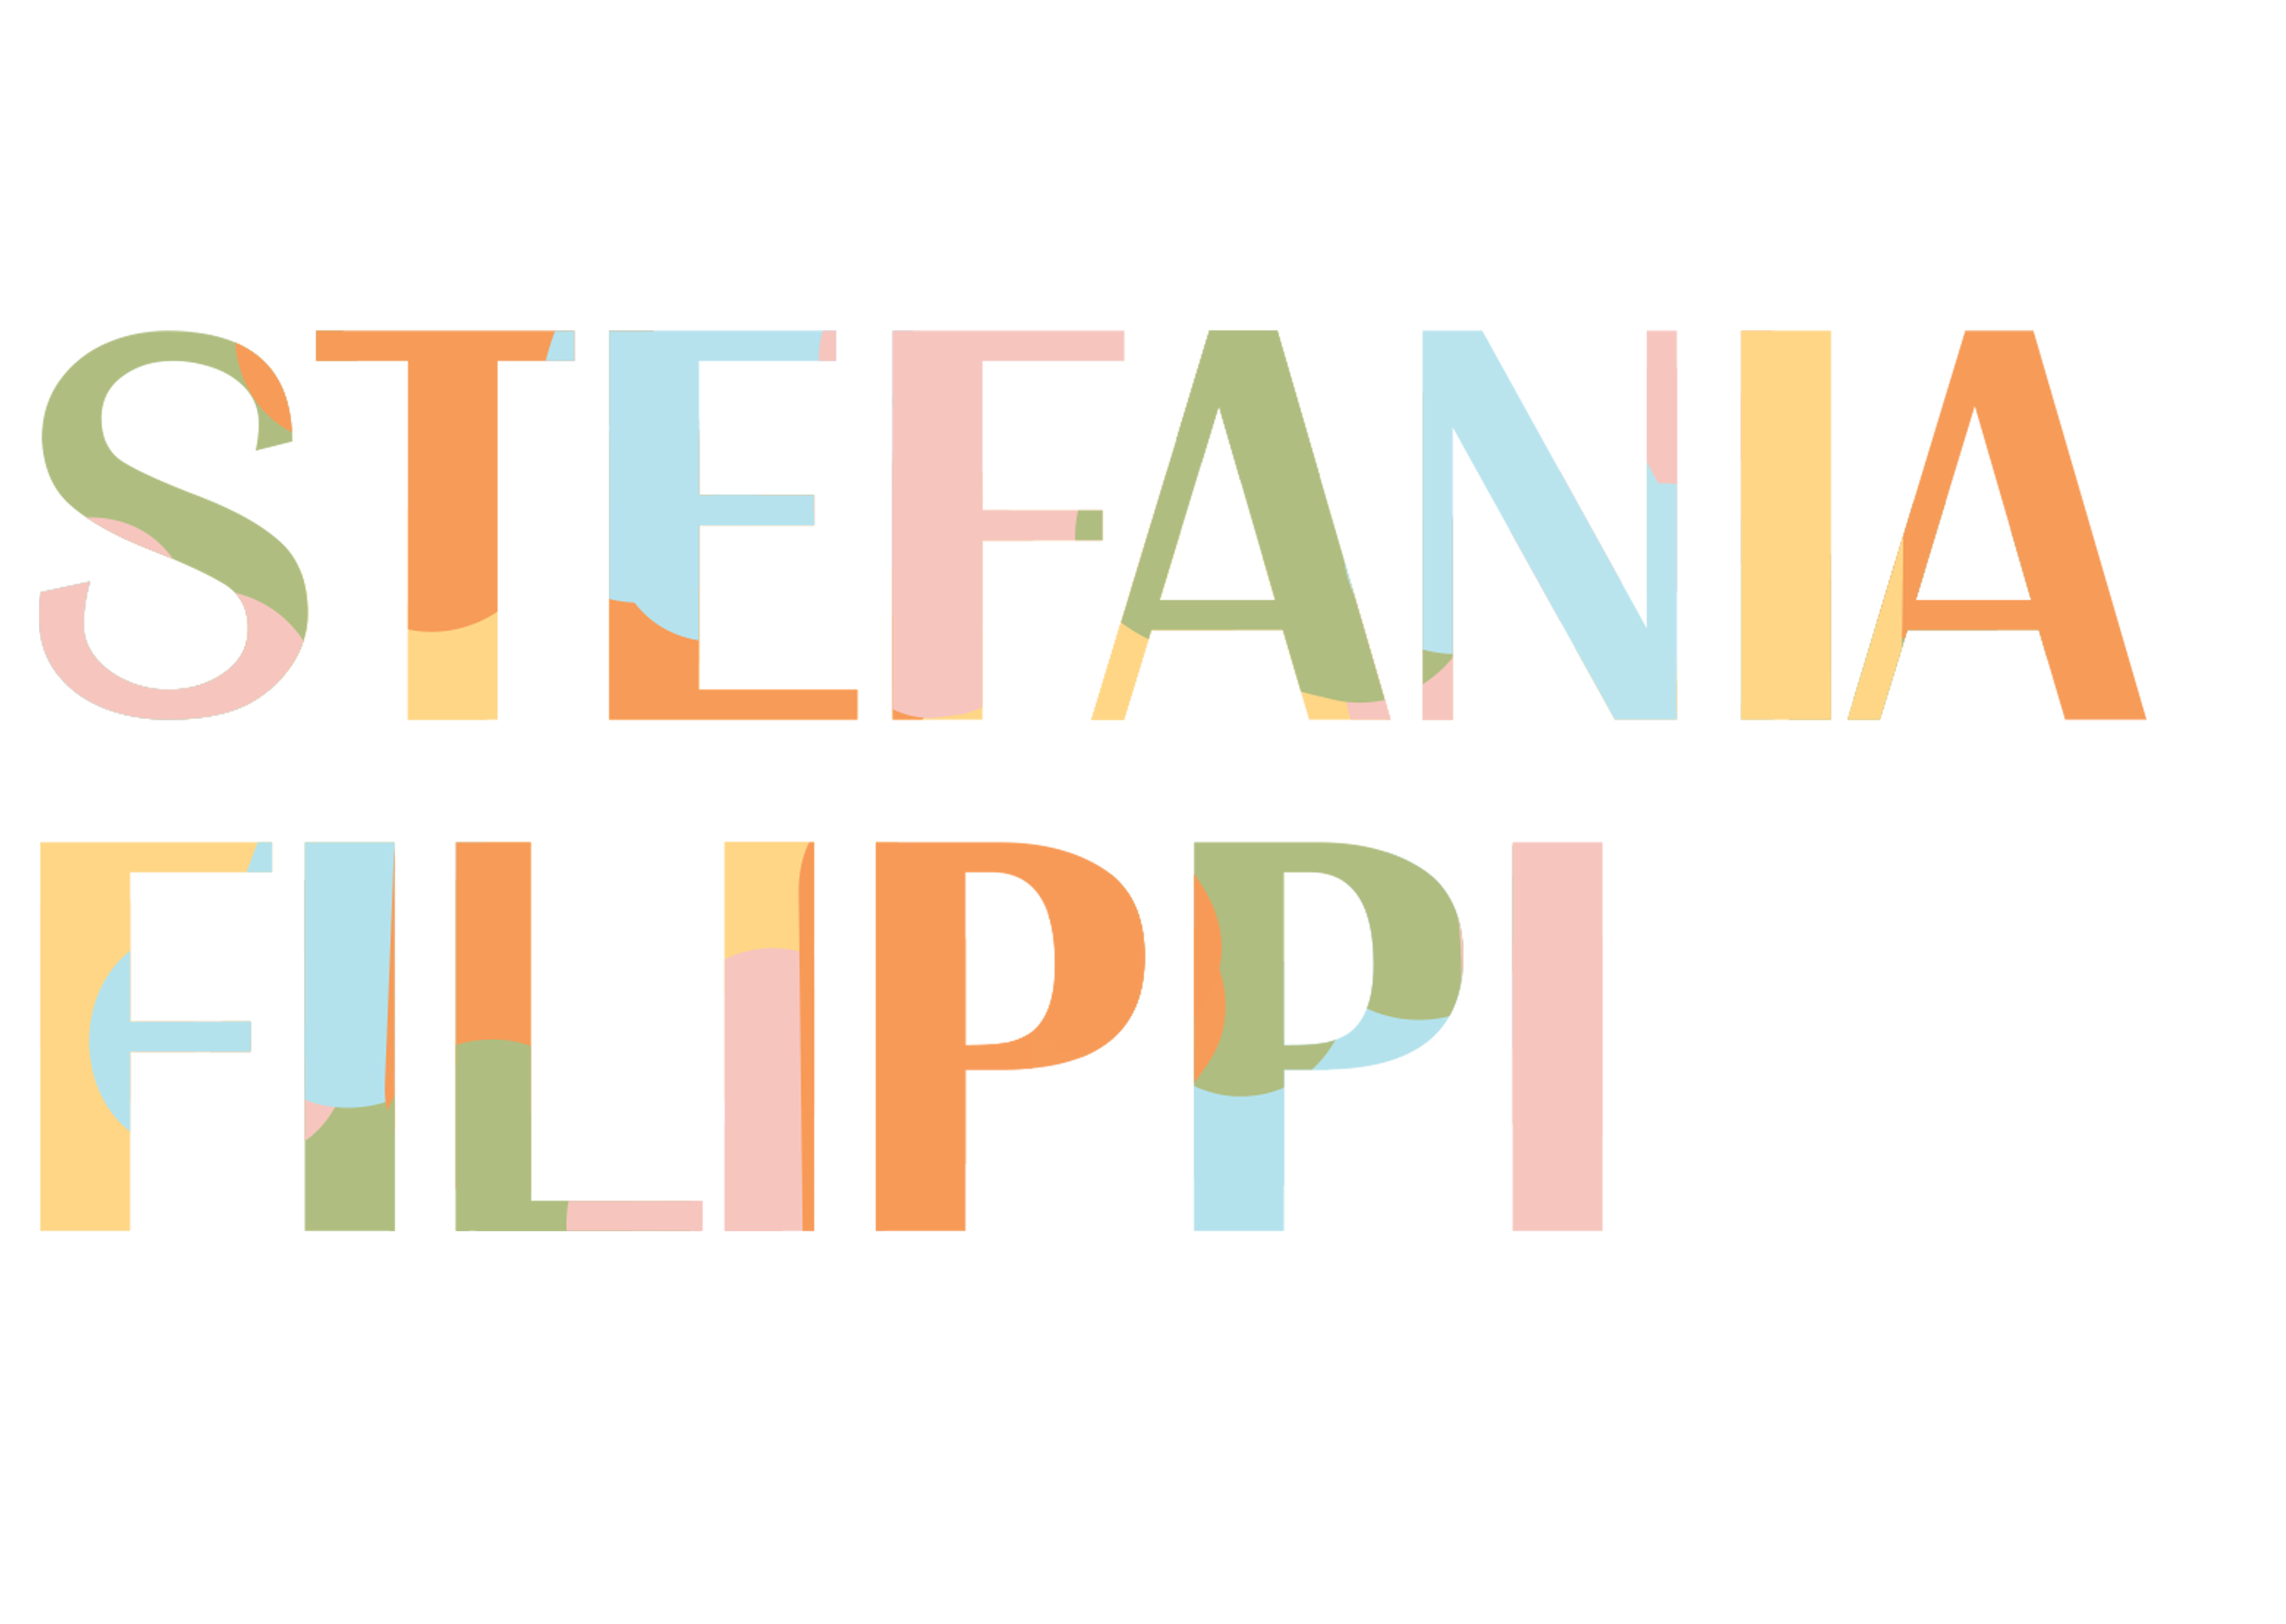 Stefania Filippi